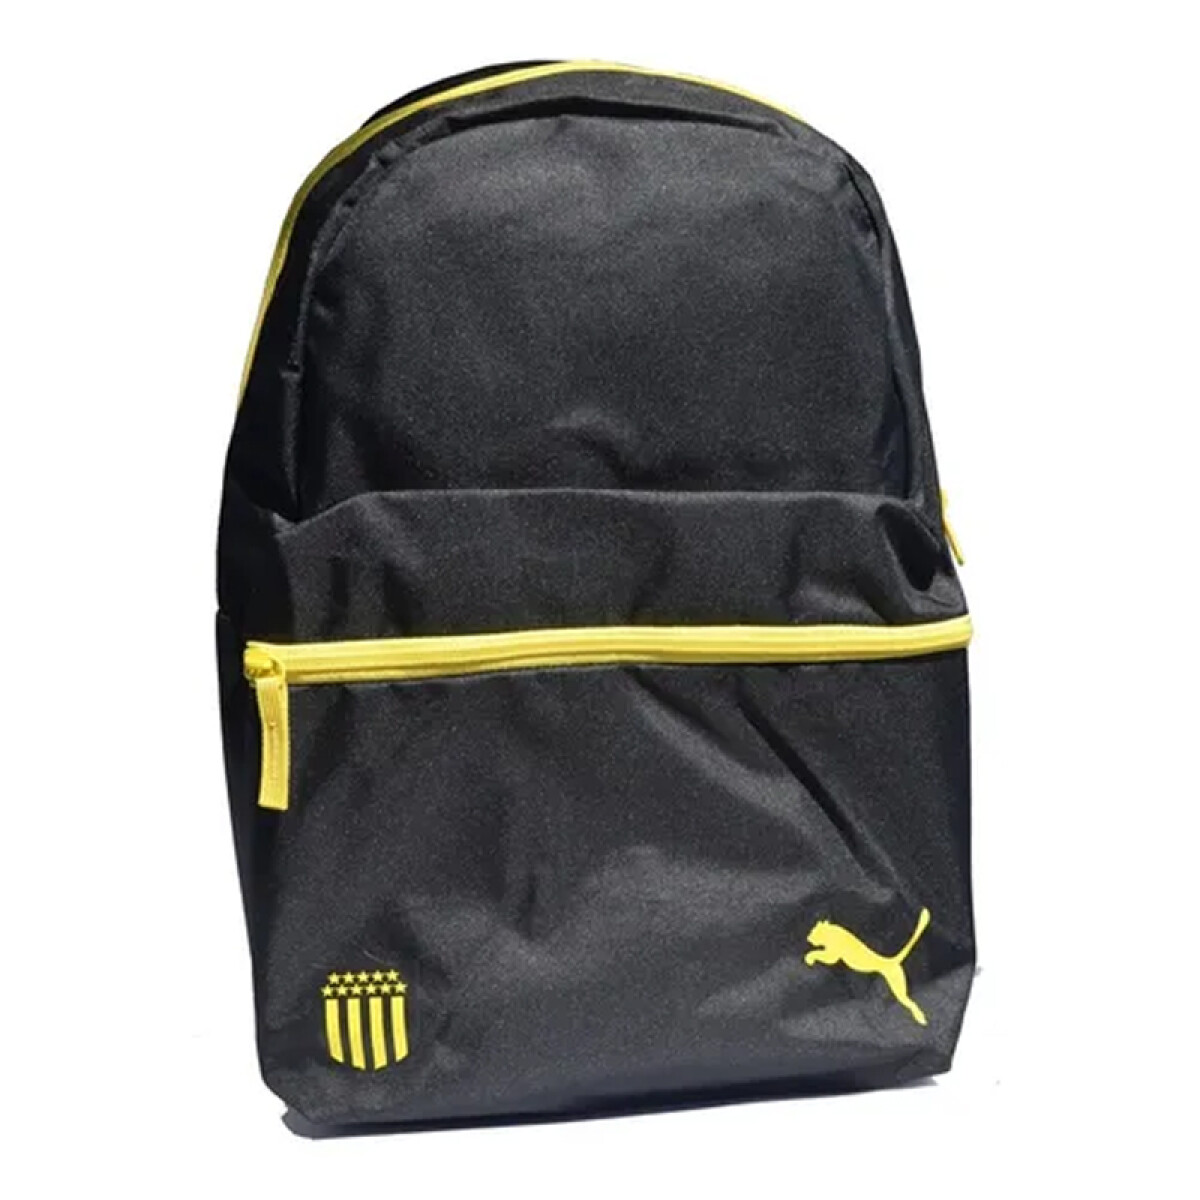 Peñarol fan backpack 07978201 - Neg/amar. 